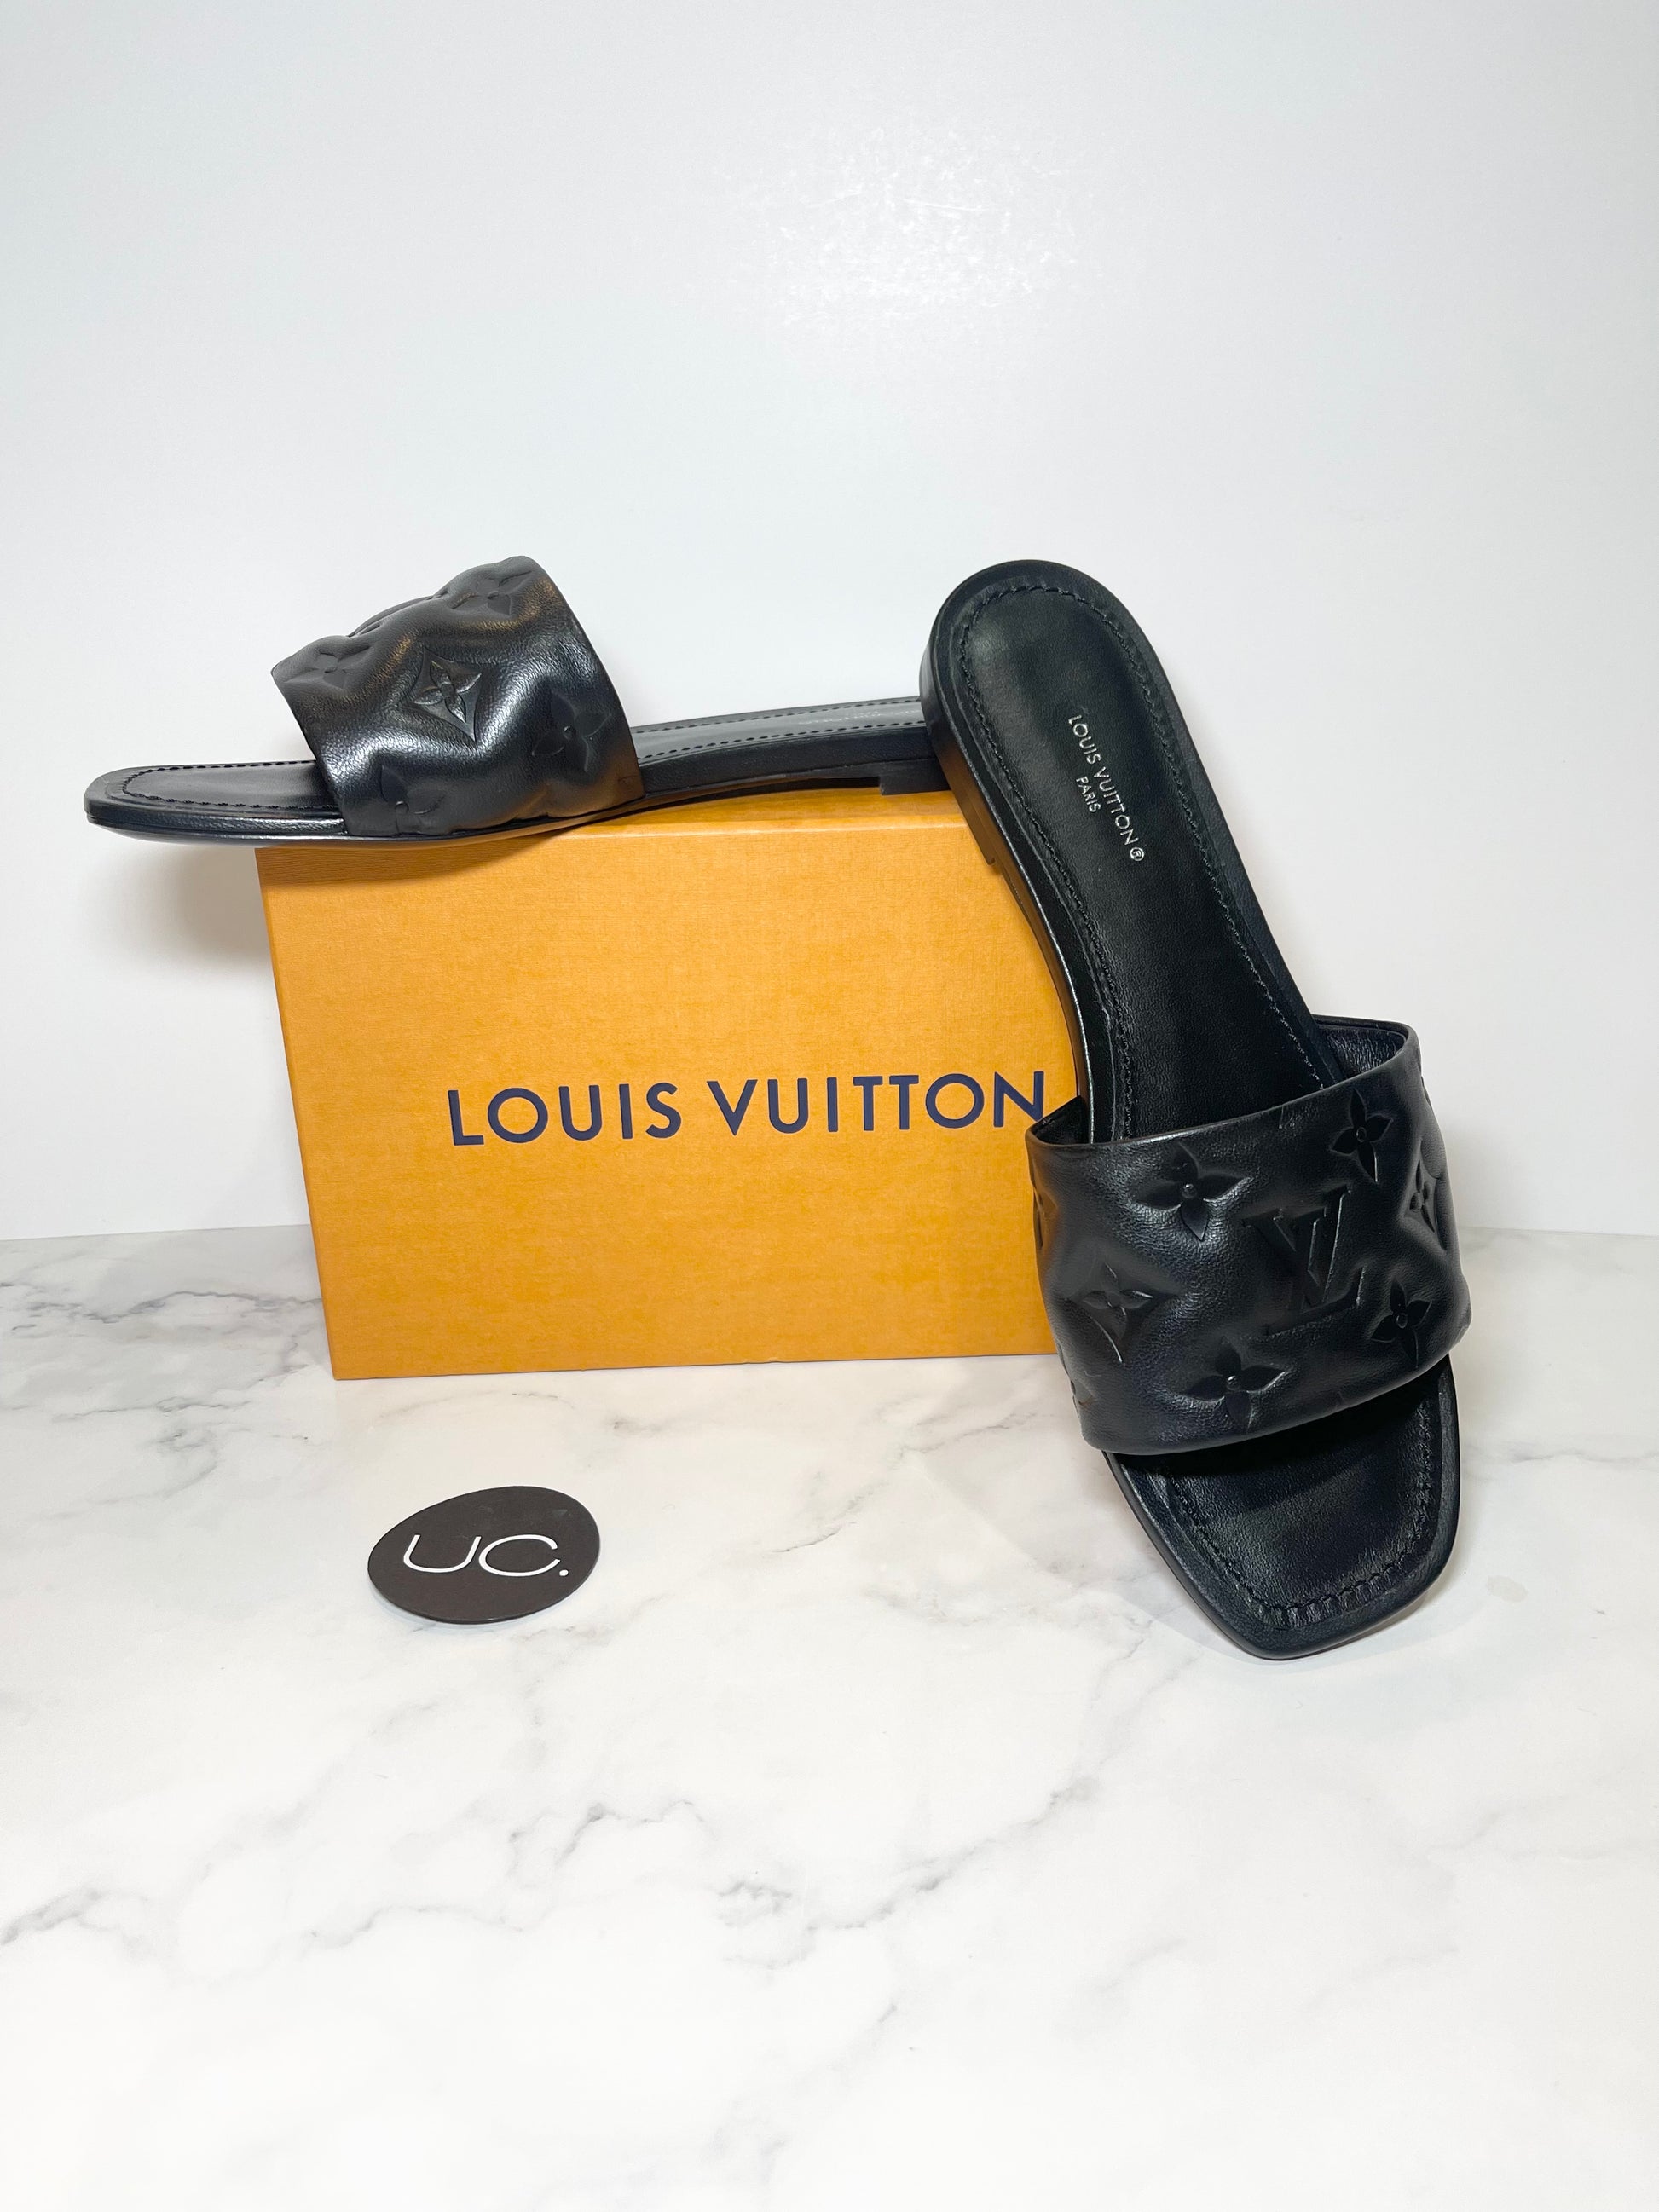 Louis Vuitton Blue Leather Revival Mule Sandals Size 39 Louis